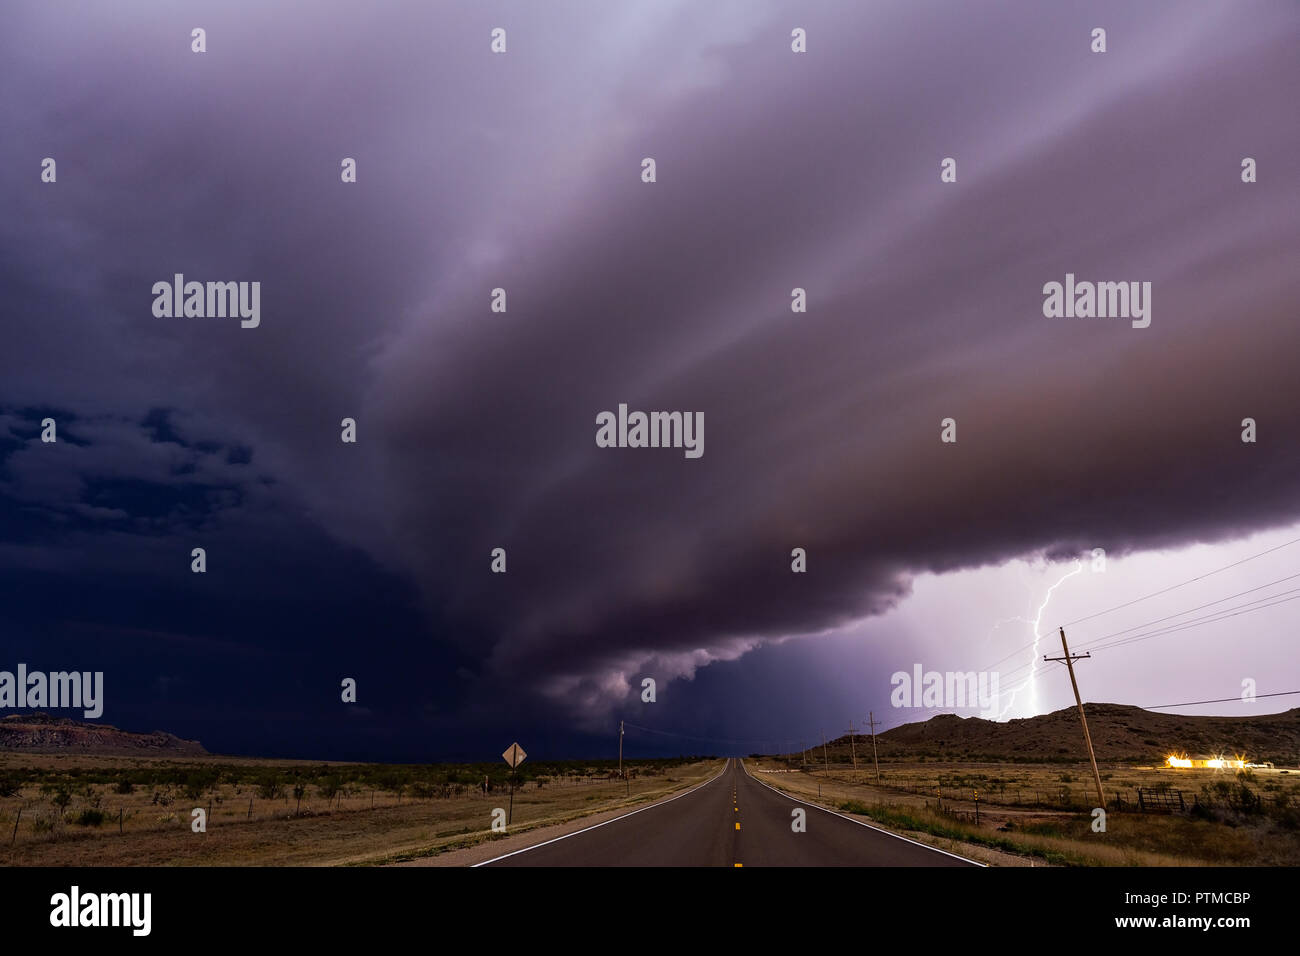 Dramatische Schelfwolken (Arcus) und Blitze, während sich bedrohliche Gewitter Tucumcari, New Mexico, nähern Stockfoto